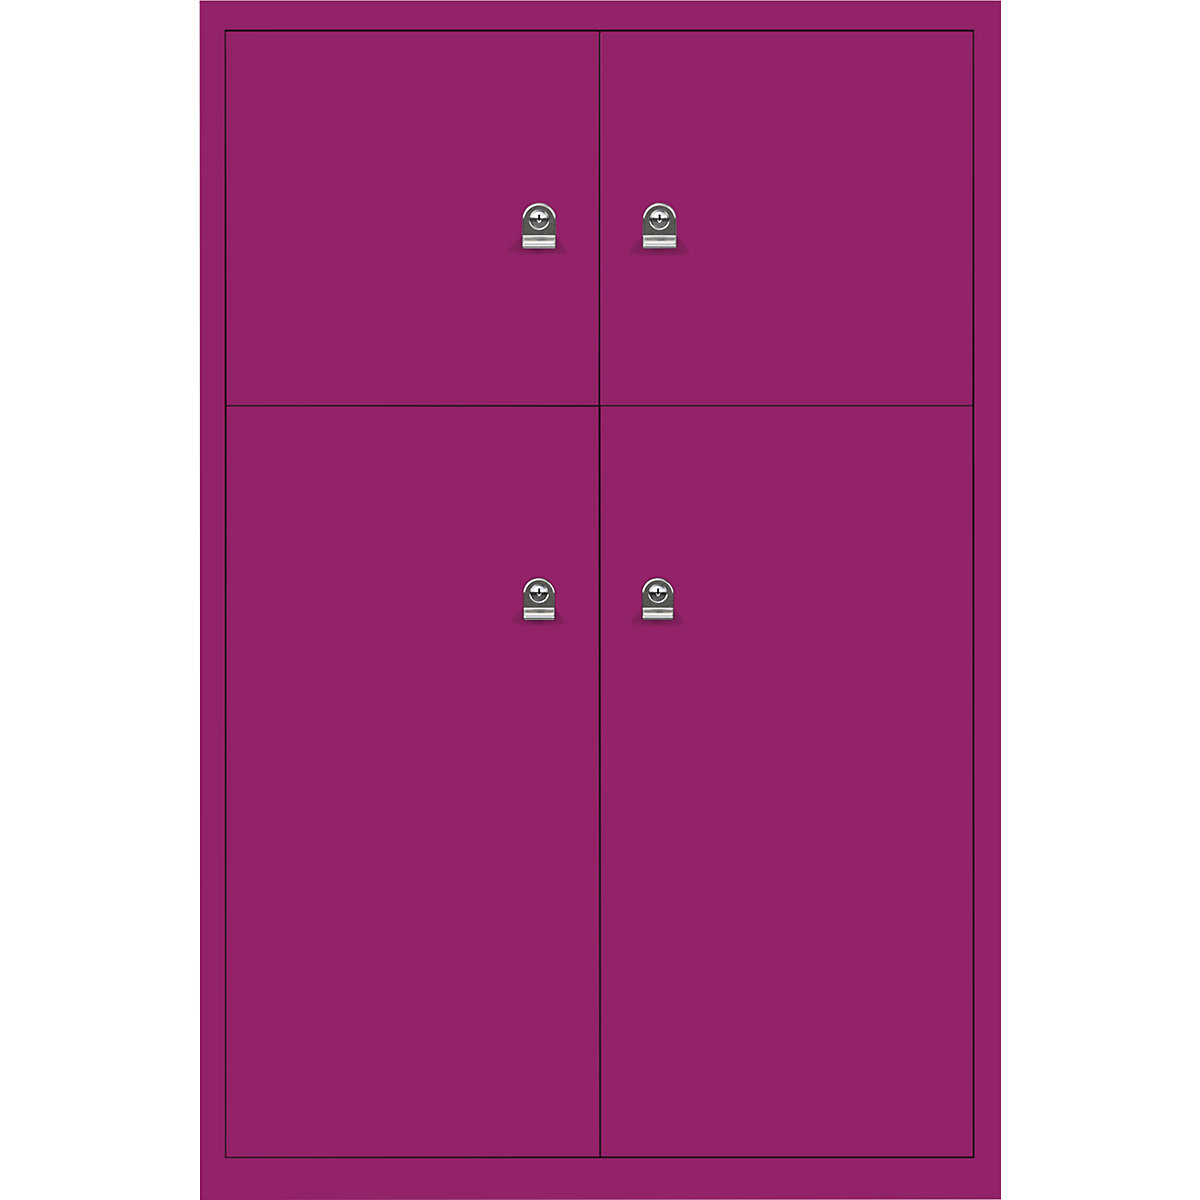 Omara s predelki z zaklepanjem LateralFile™ – BISLEY, 4 predelki z zaklepanjem, višina 2 x 375 mm, 2 x 755 mm, fuksija roza barve-16